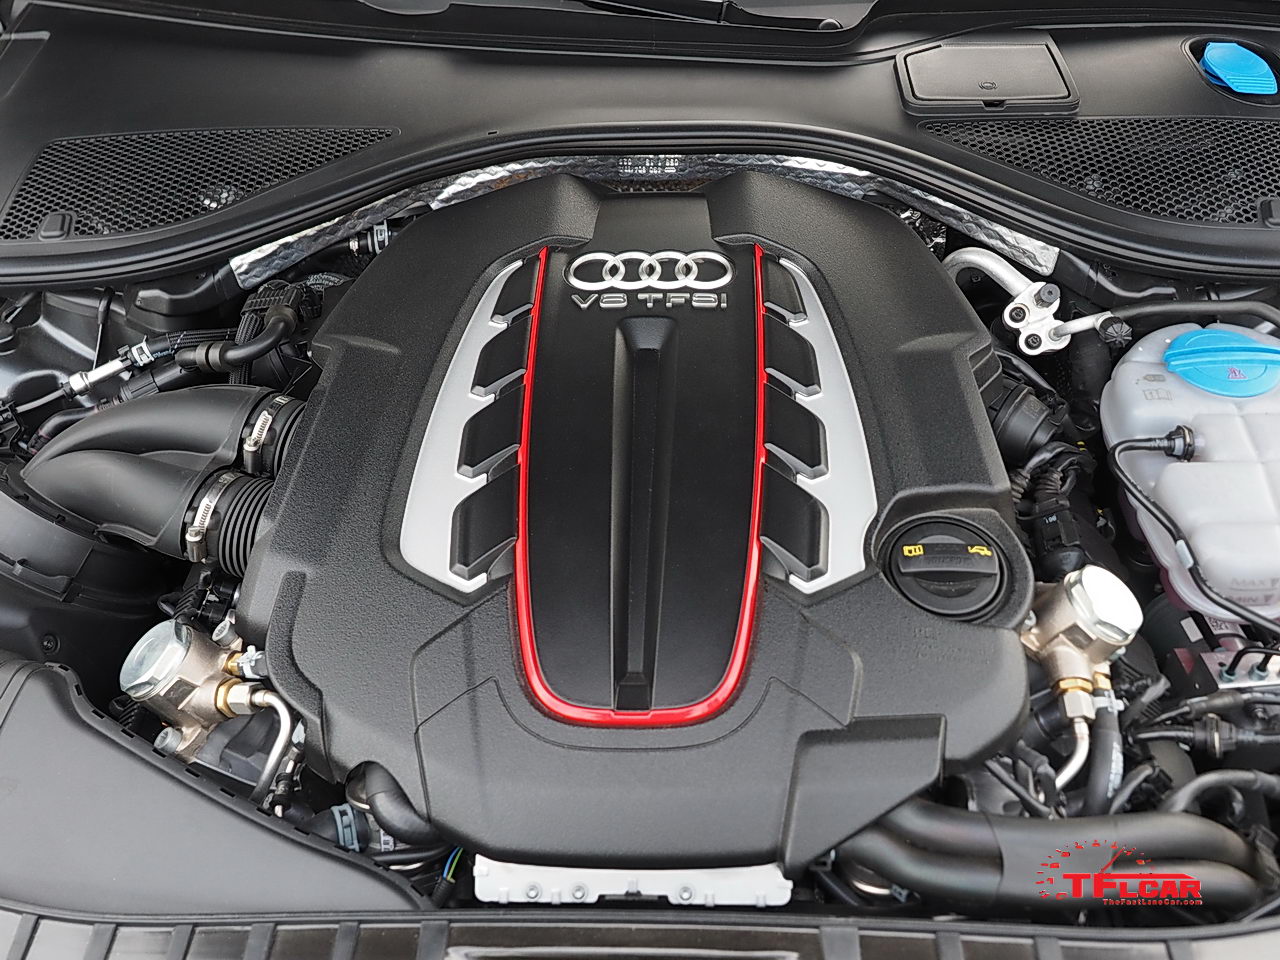 2016 Audi S7 4.0L turbo v8